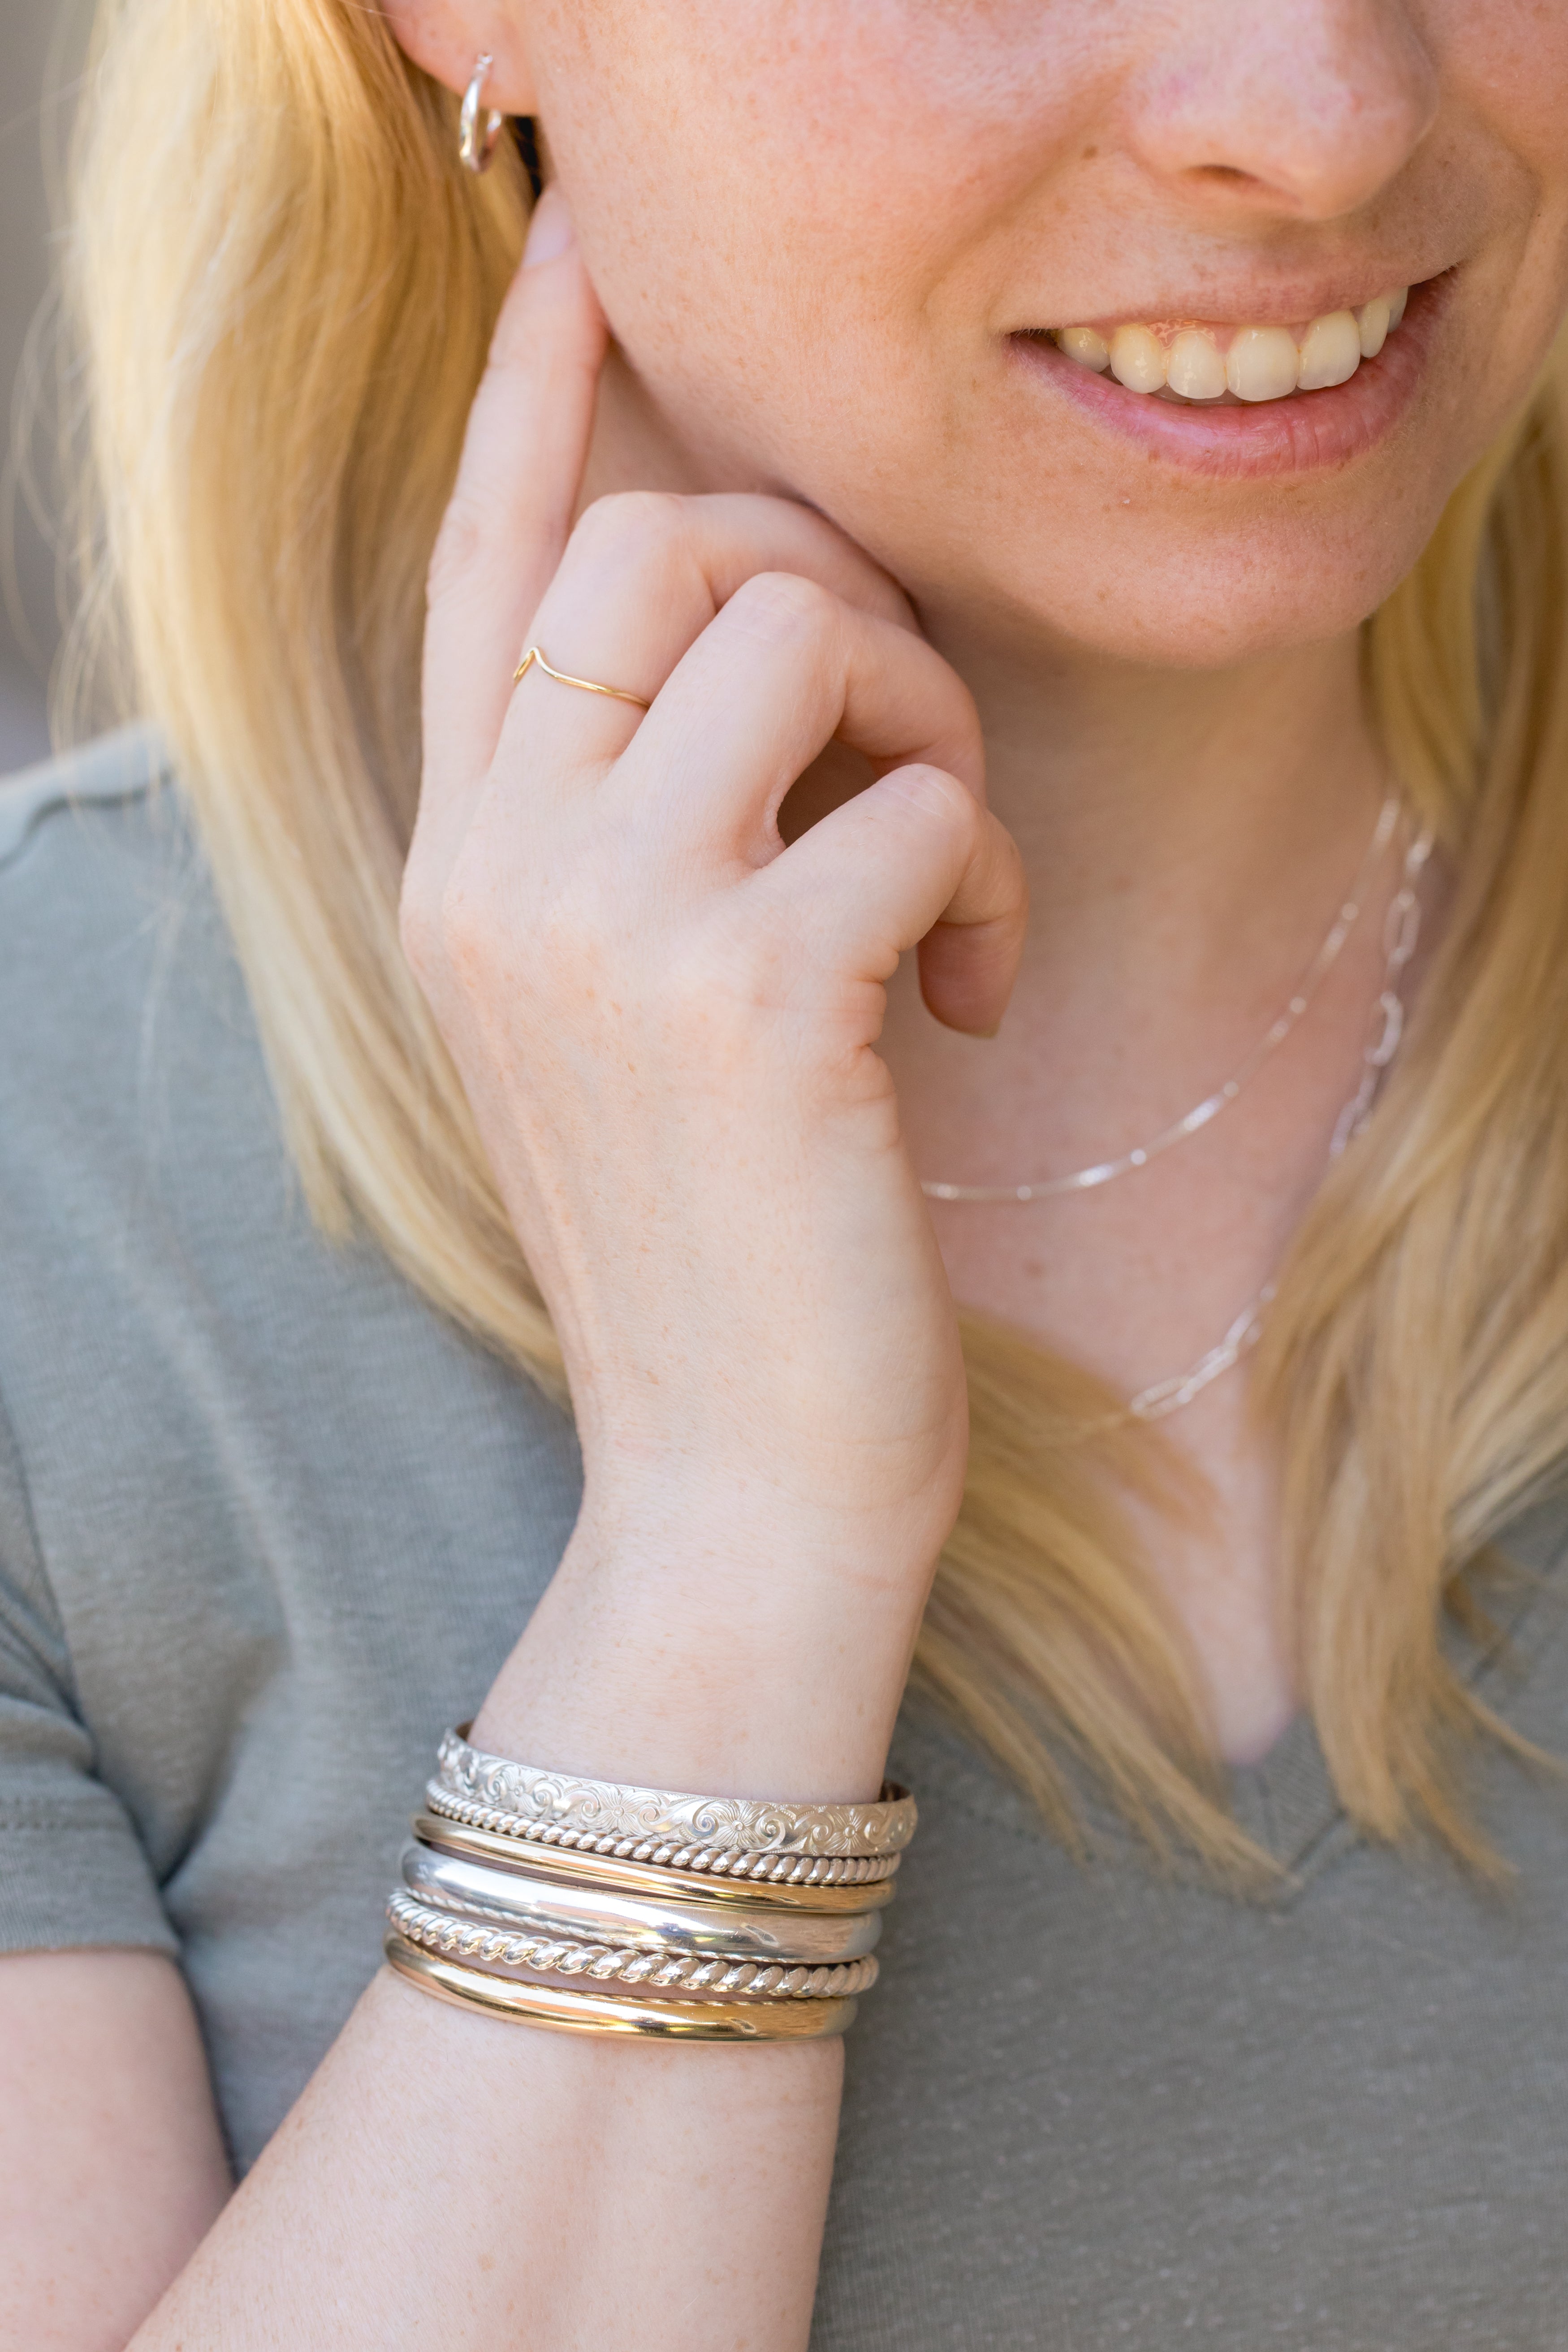 Macy's Children's Flex Bangle Bracelet in 14k Gold - Macy's